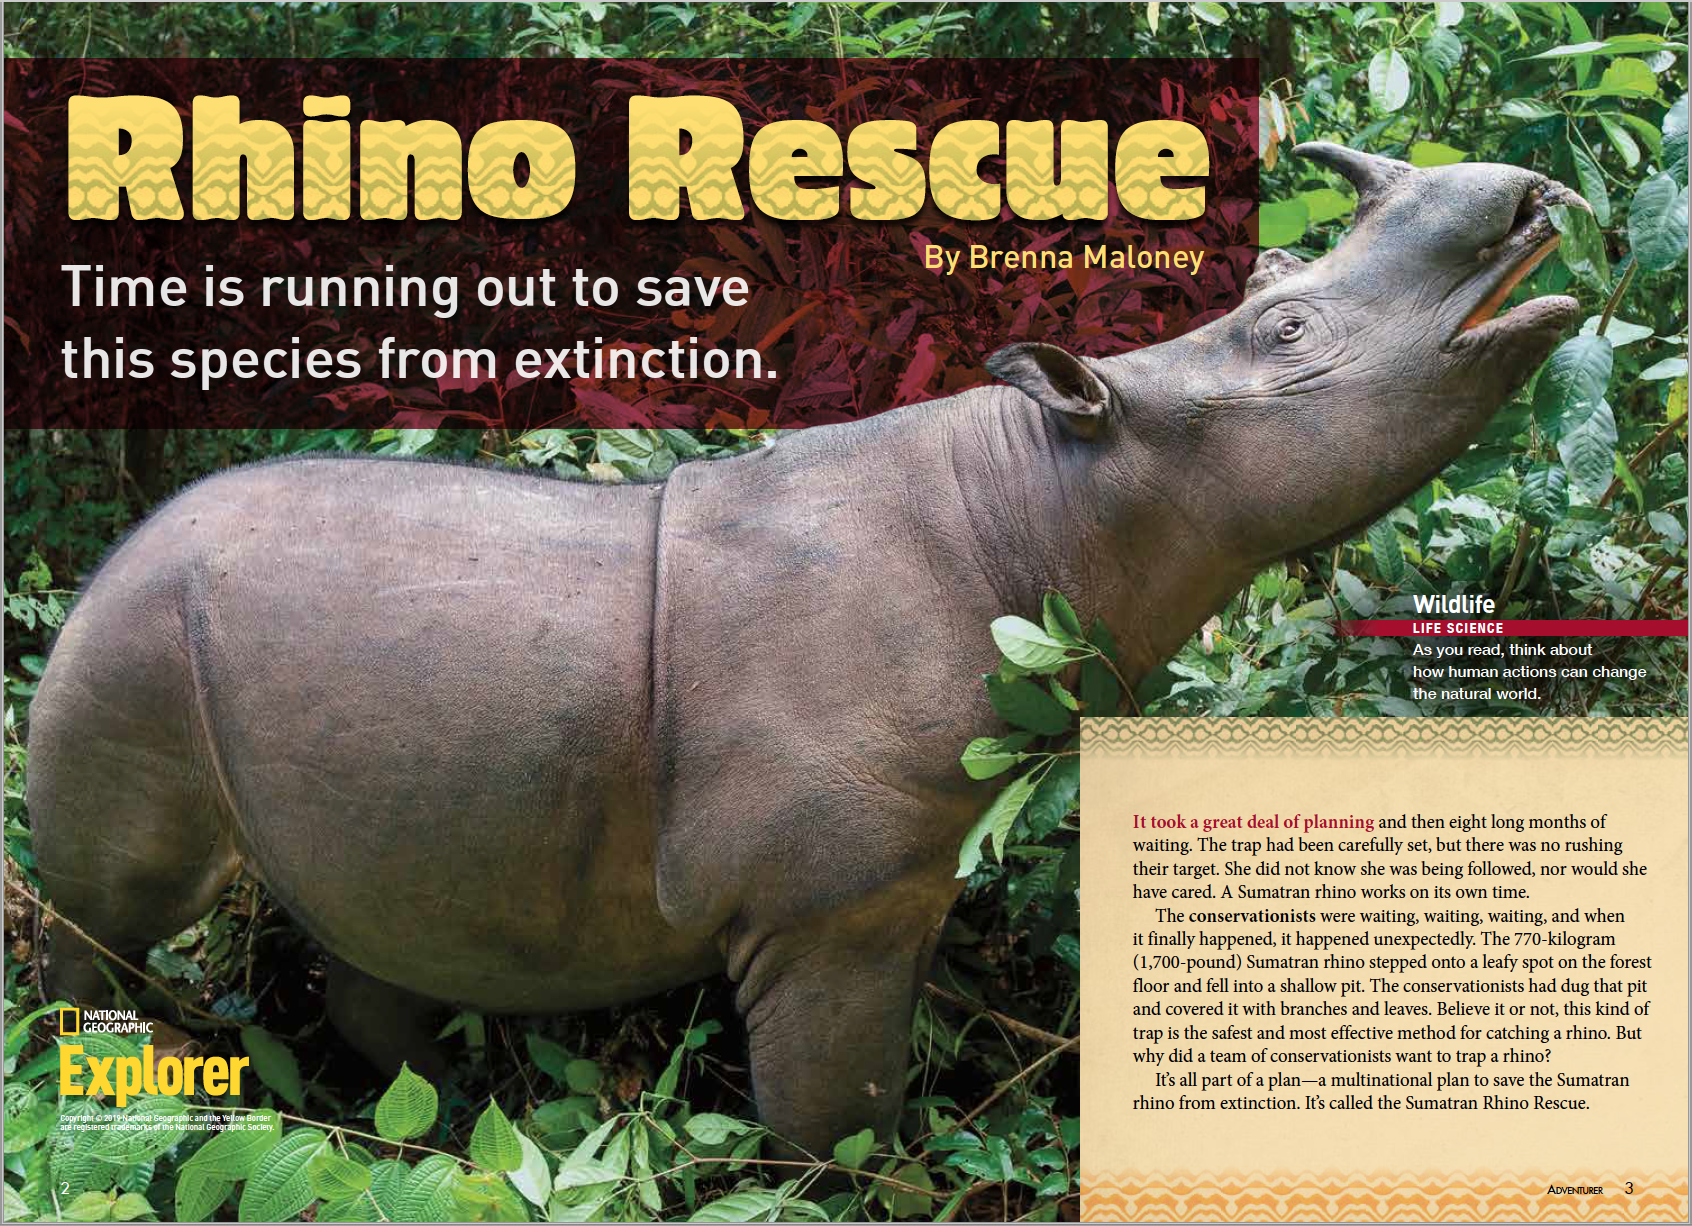 https://images.nationalgeographic.org/image/upload/v1638892349/EducationHub/photos/rhino-rescue.png